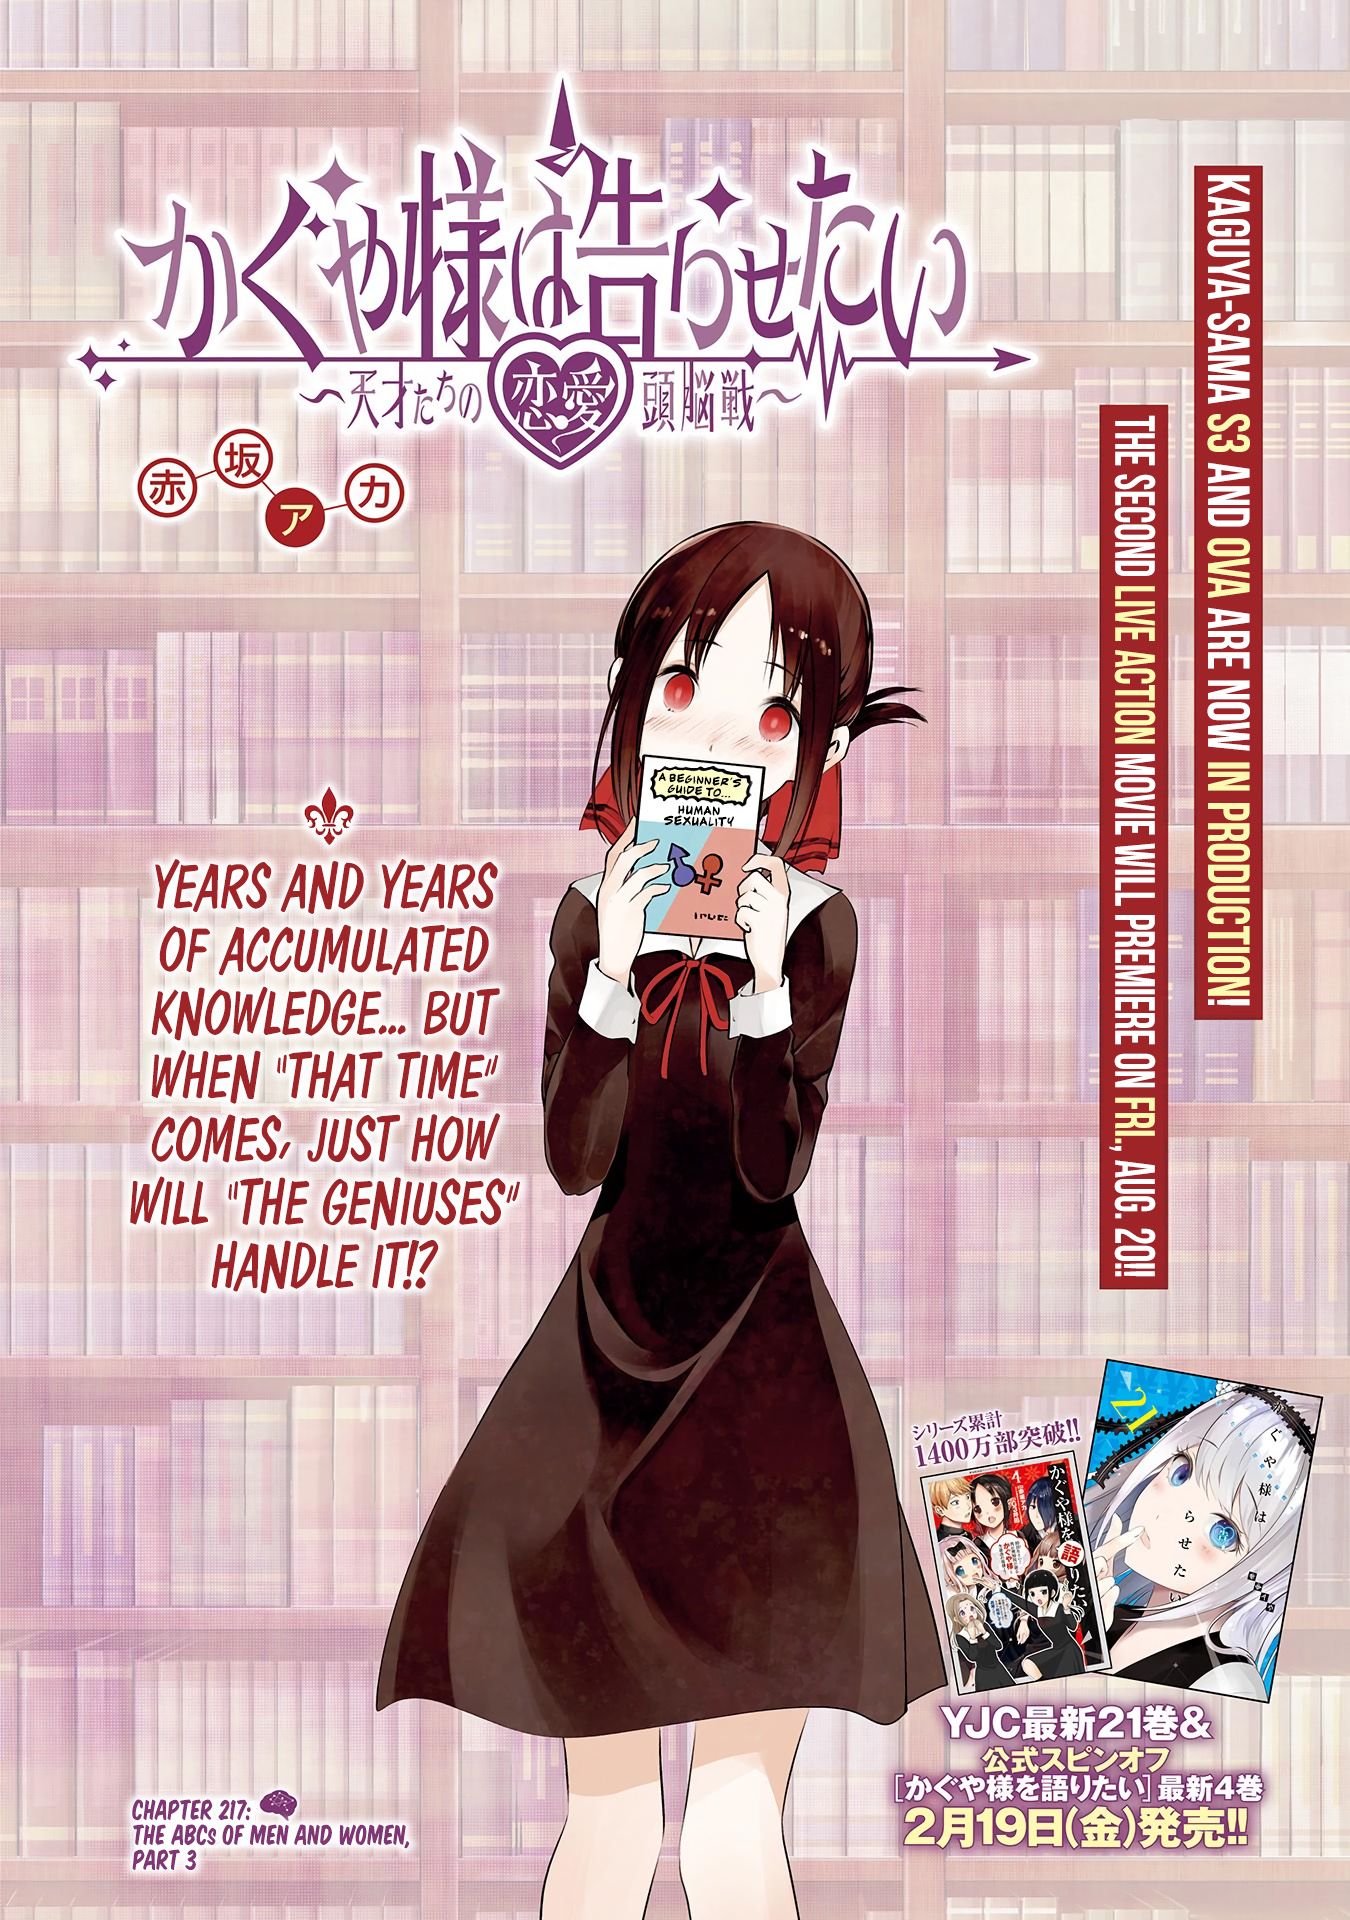 Kaguya-Sama Love Is War Chapter 267: What Will Miyuki Do With A Billion  Yen? Release Date : r/TheAnimeDaily